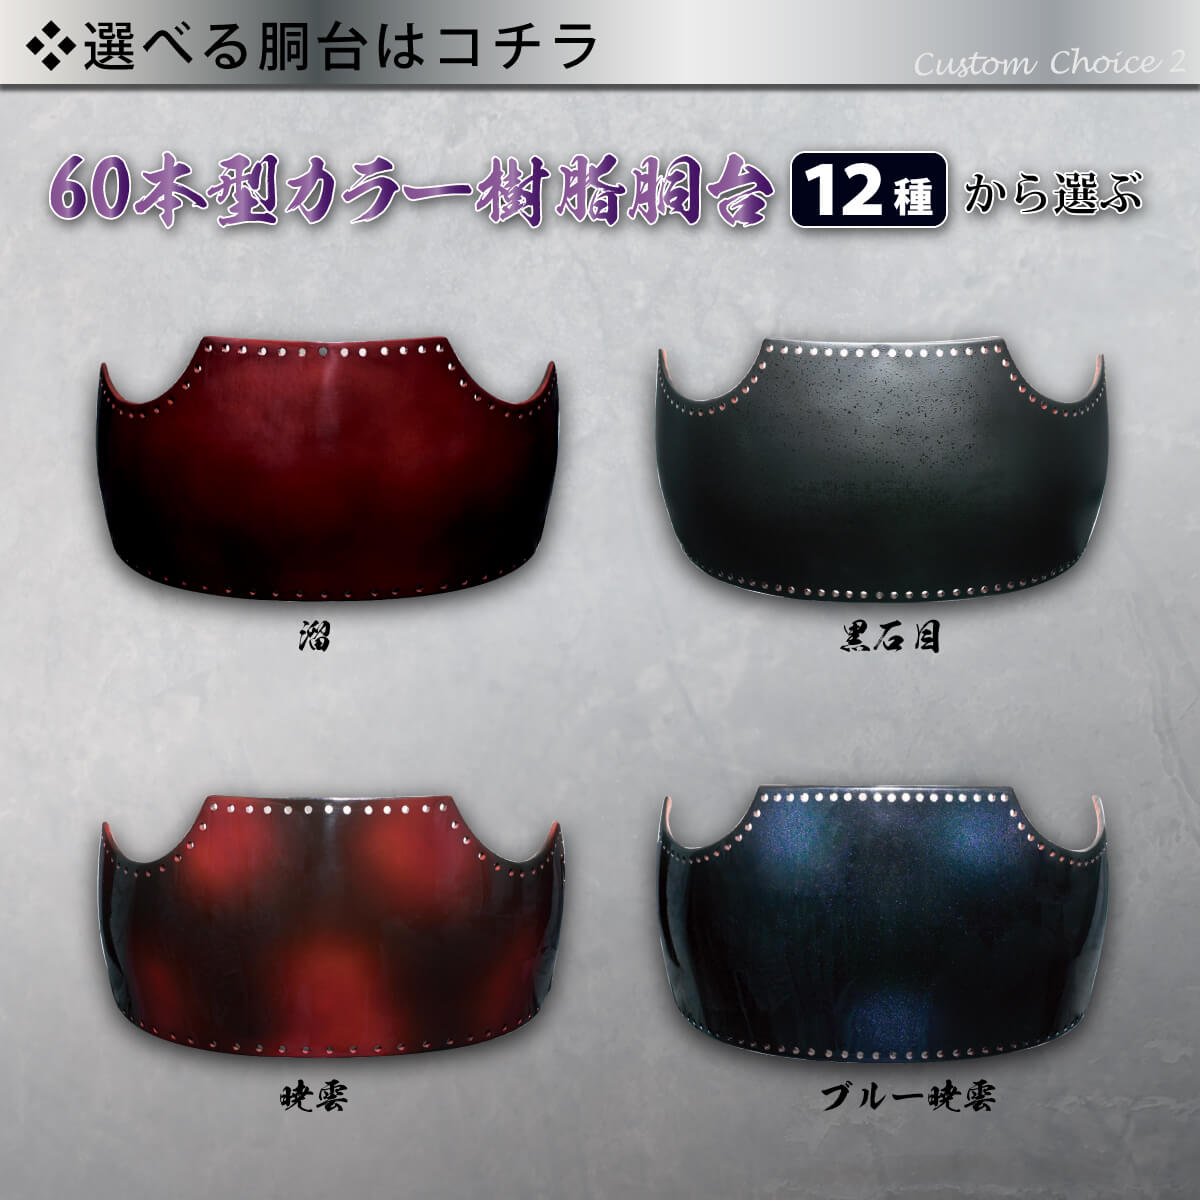 【 006K 】 剣道 カスタム胴 60本型 大サイズ カラー樹脂胴台 胸飾り 